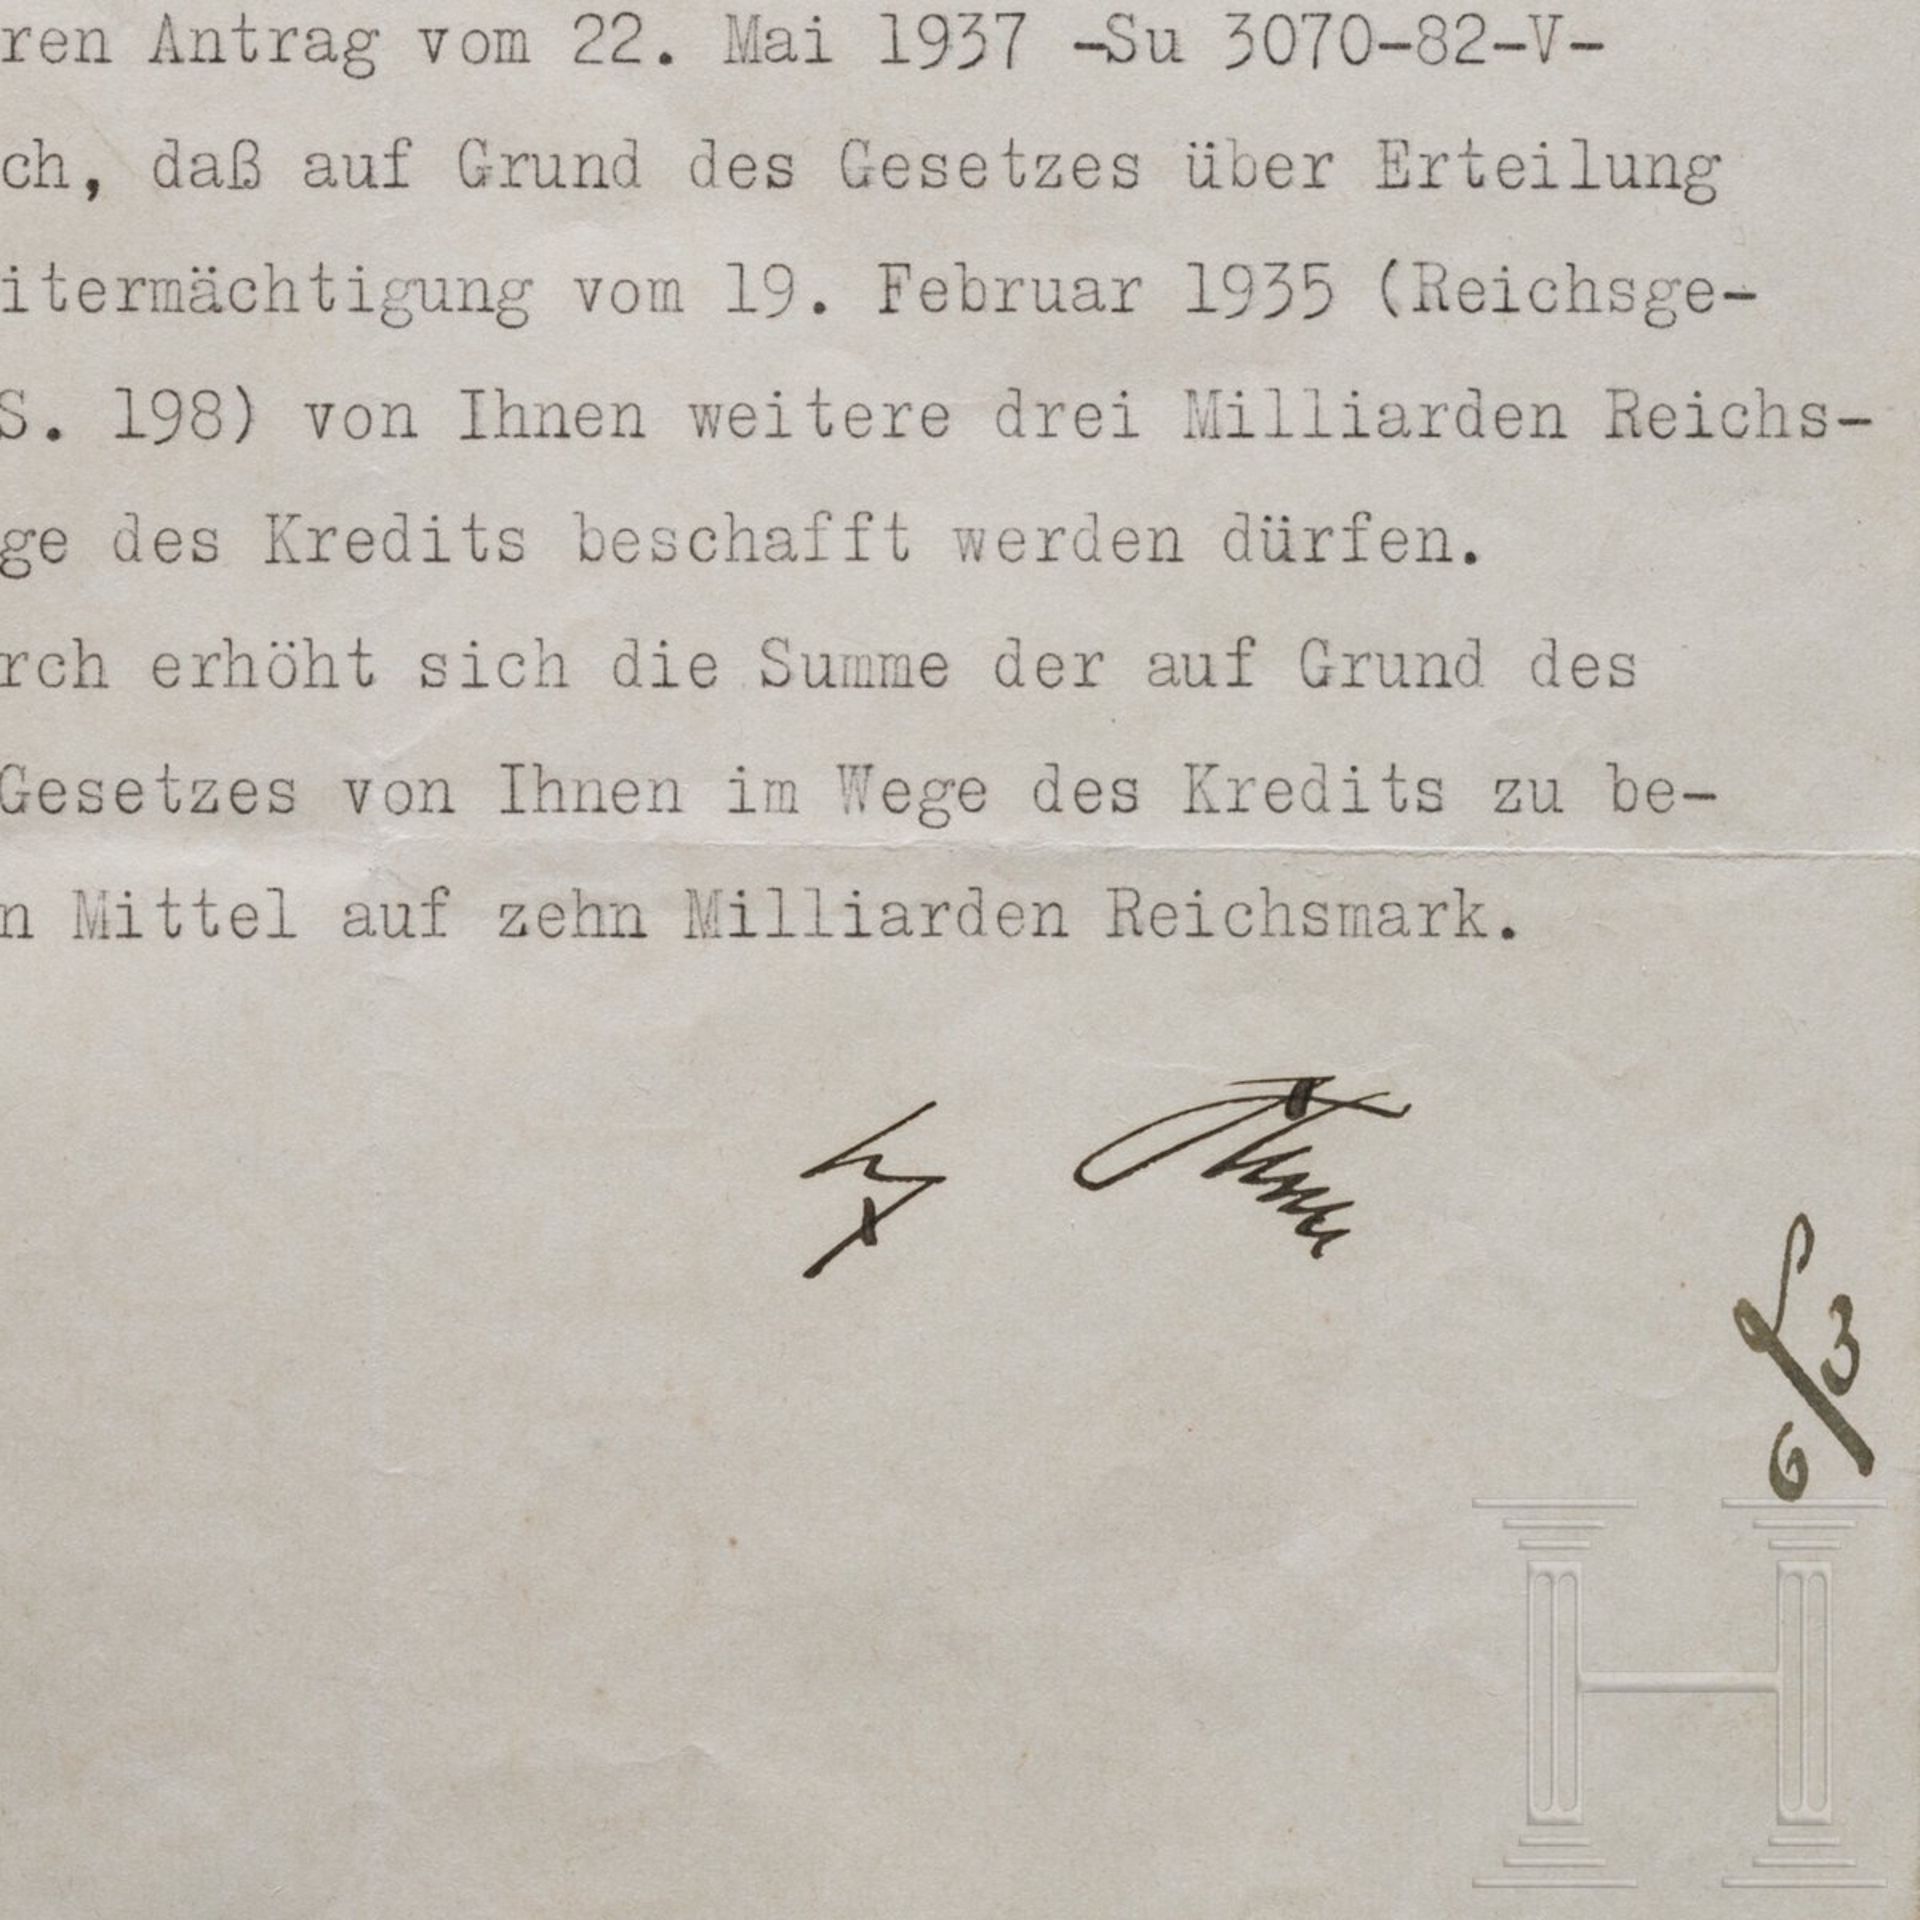 Adolf Hitler - Kreditermächtigung vom 3. Juni 1937 mit einer Erhöhung von 7 auf 10 Milliarden RM - Image 2 of 3